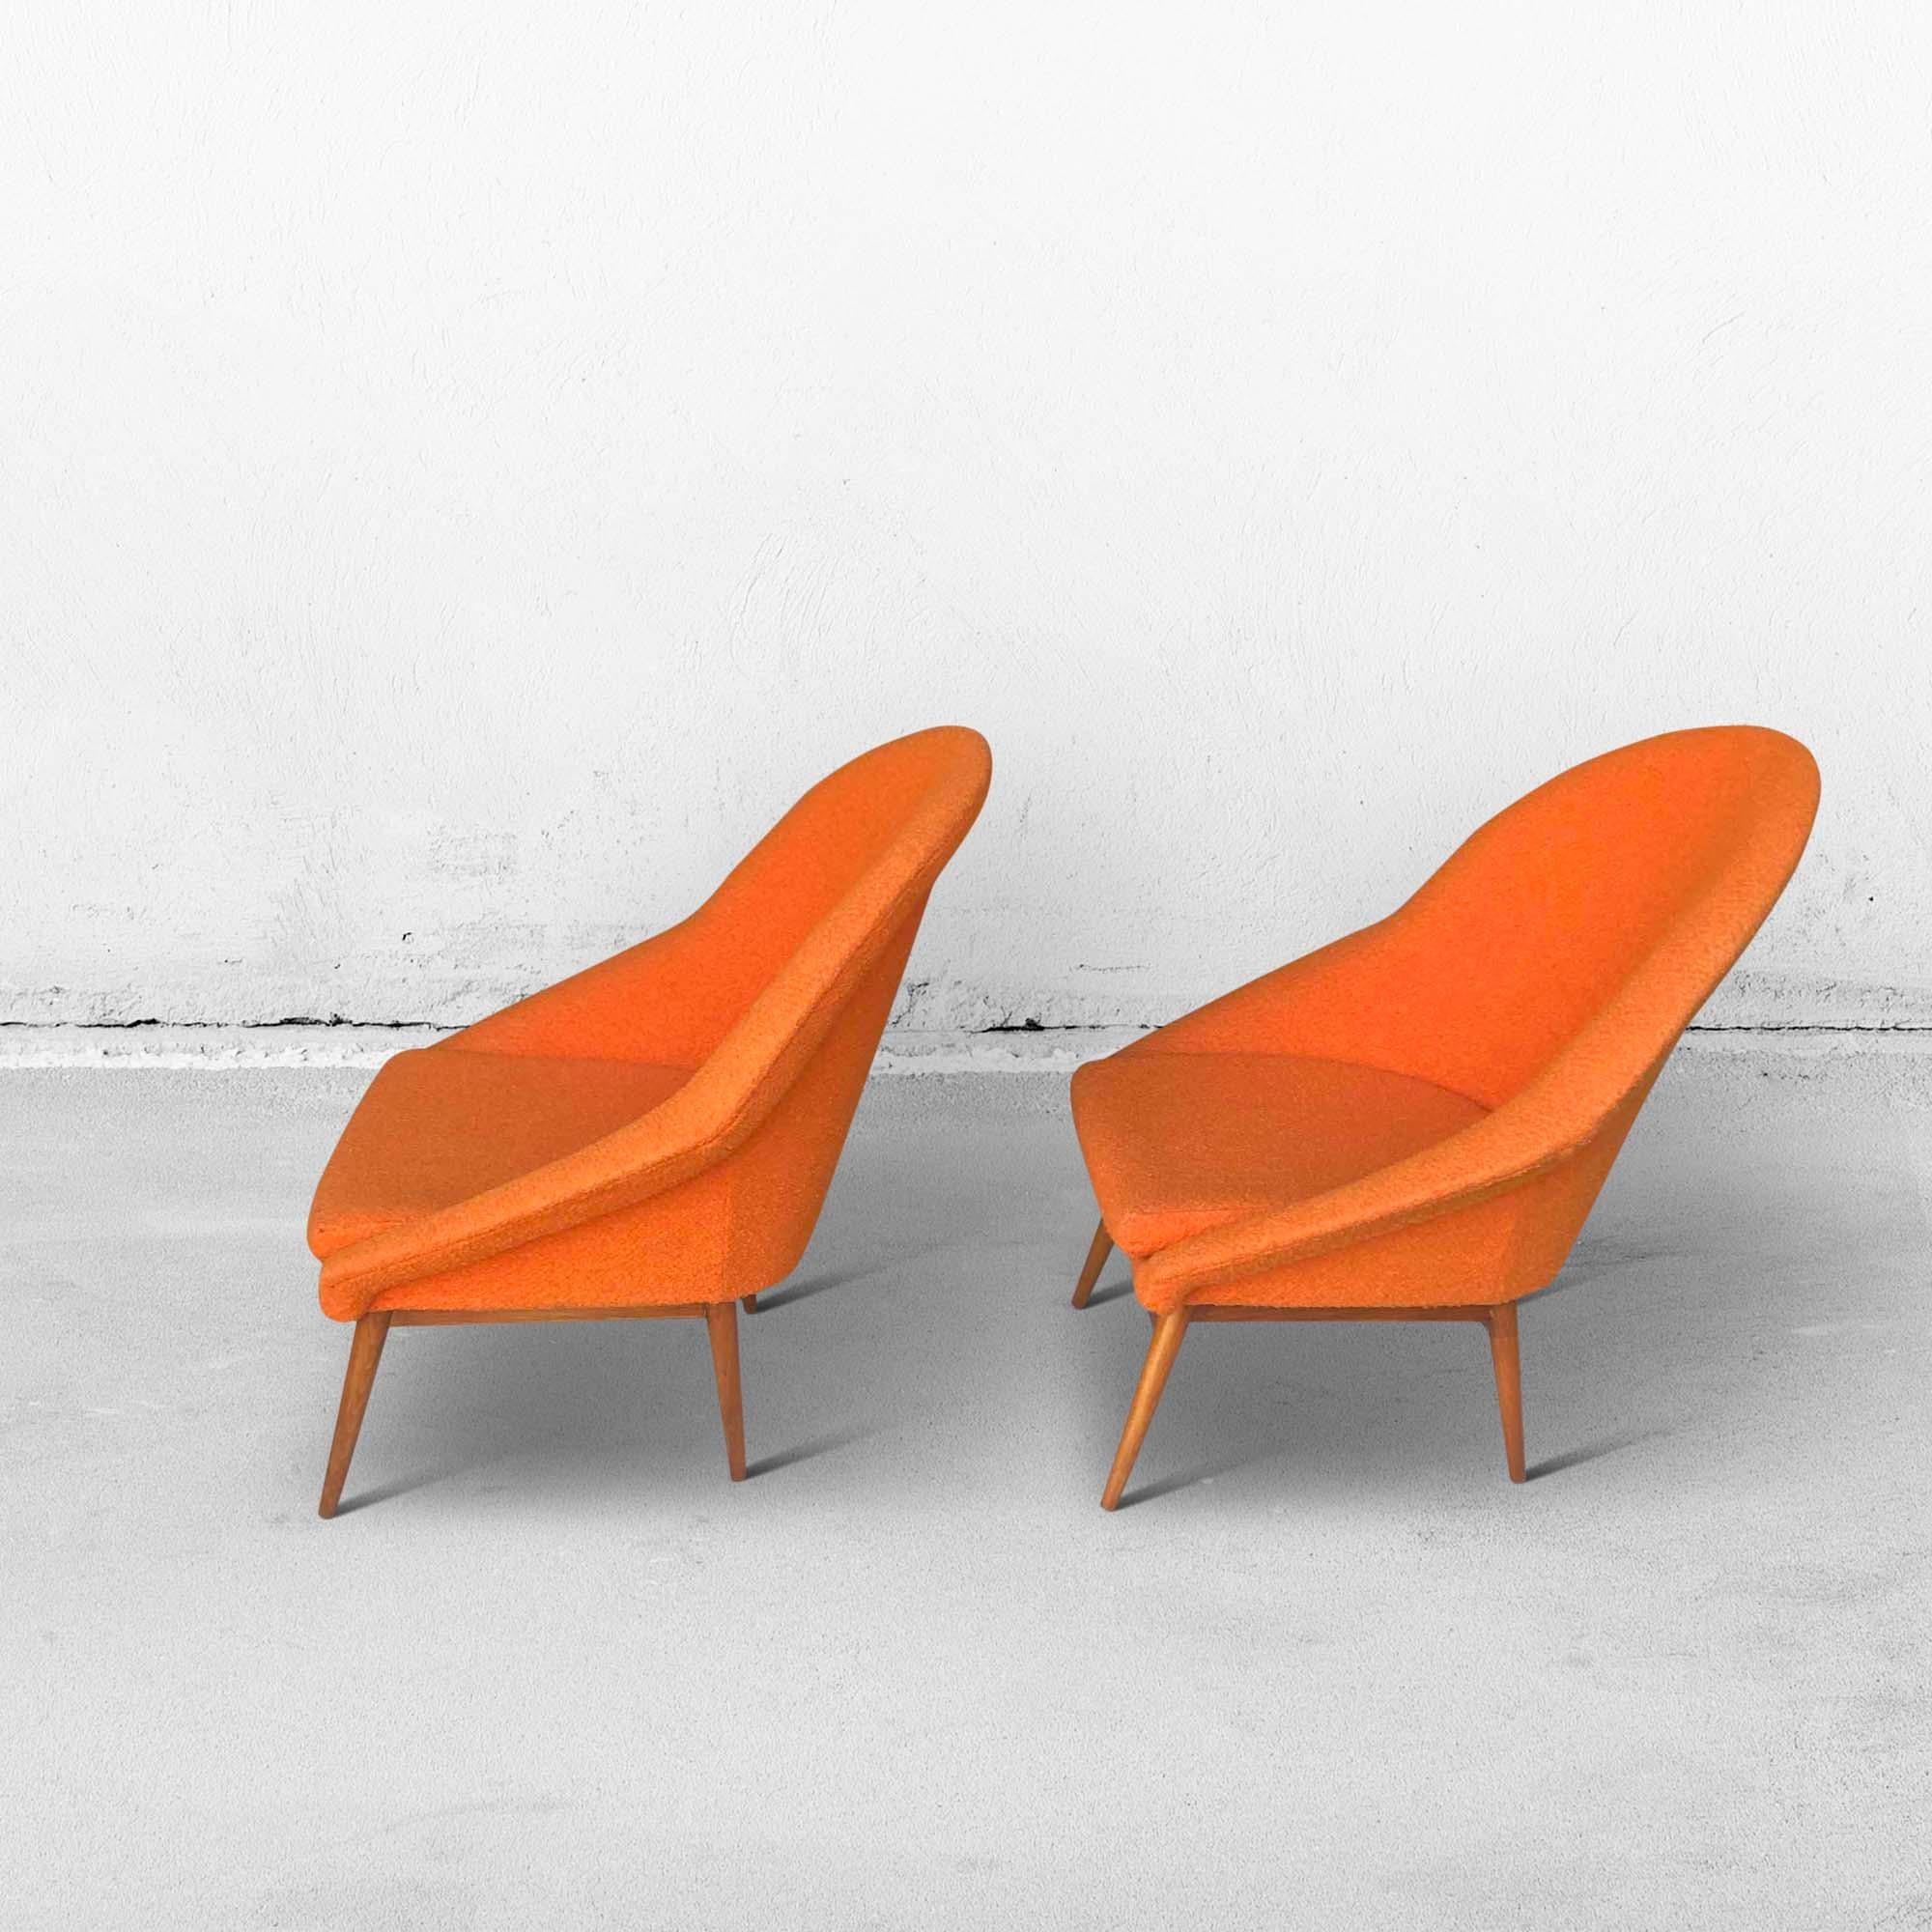 Un ensemble de sièges baquets d'une couleur orange foncé. Ces fauteuils datent des années 1960. Le tissu ne présente aucune tache ou dommage et le confort d'assise est encore très bon. Les pieds en bois sont encore très solides et ont été